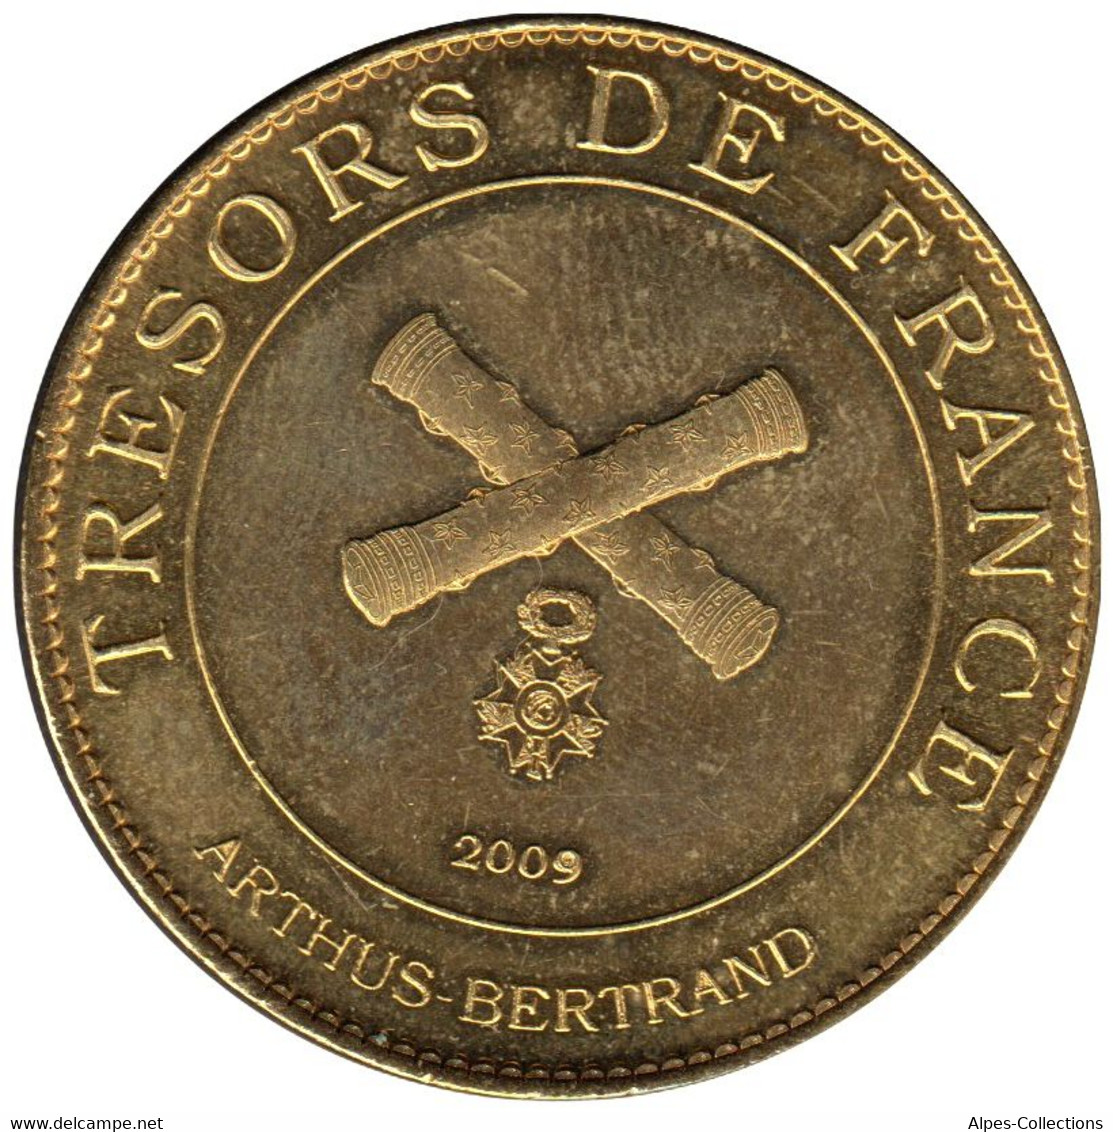 A25056-02 - JETON TOURISTIQUE ARTHUS B. - Citadelle De Besançon Vauban - 2009.1 - 2009